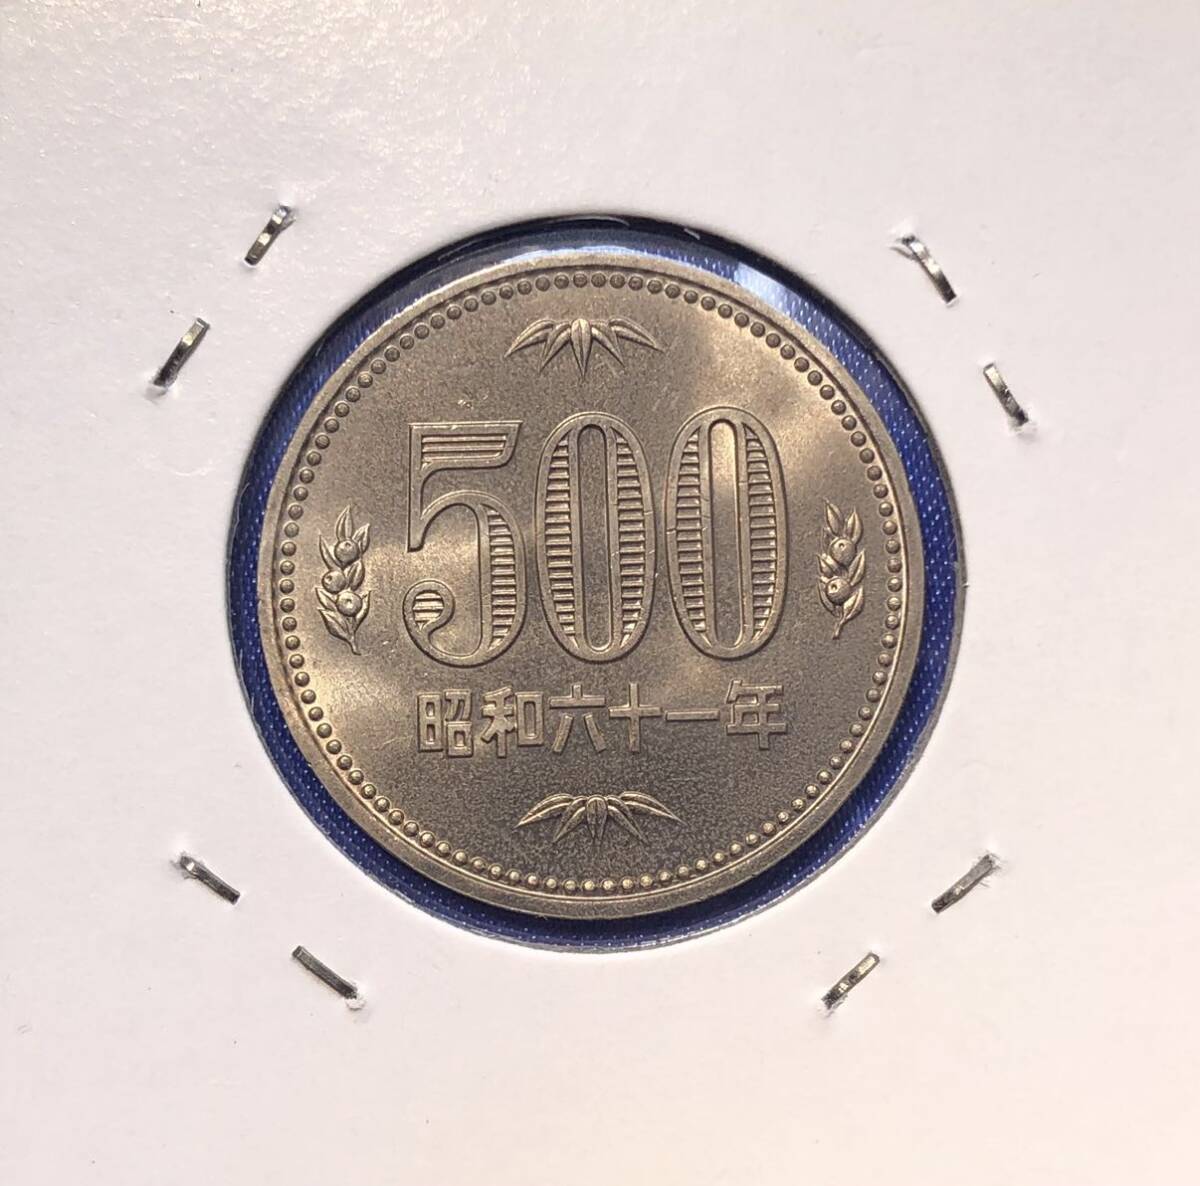 【龍】昭和61年 500円硬貨 検索 レトロの画像3